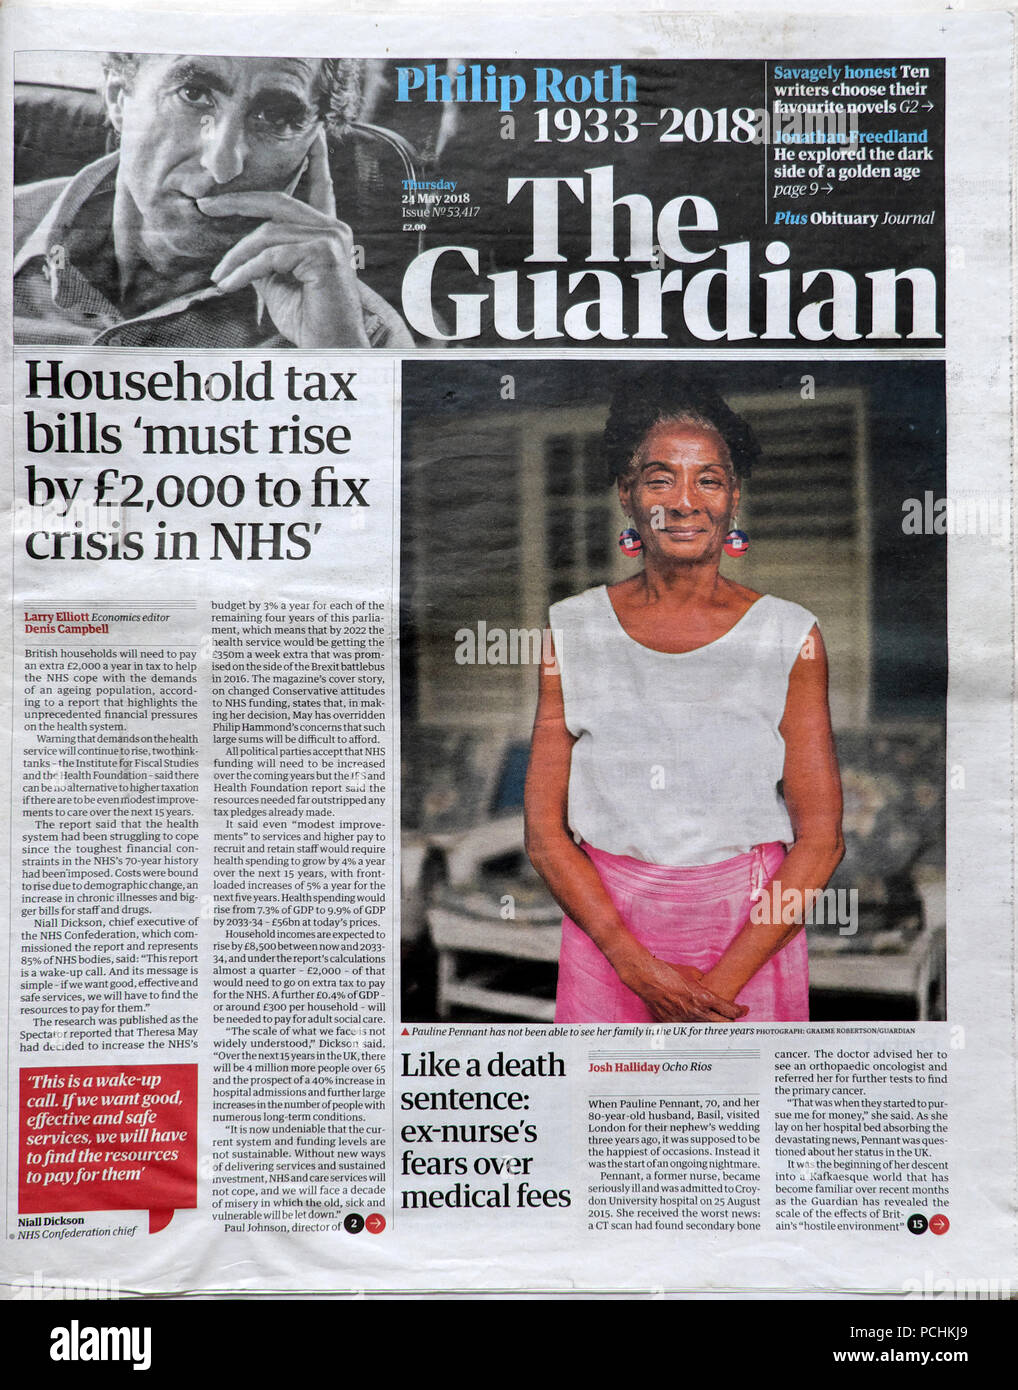 Projets de loi sur l'impôt des ménages "doit augmenter de 2 000 € à fixer crise au NHS Guardian titre mai 2018 London UK Banque D'Images